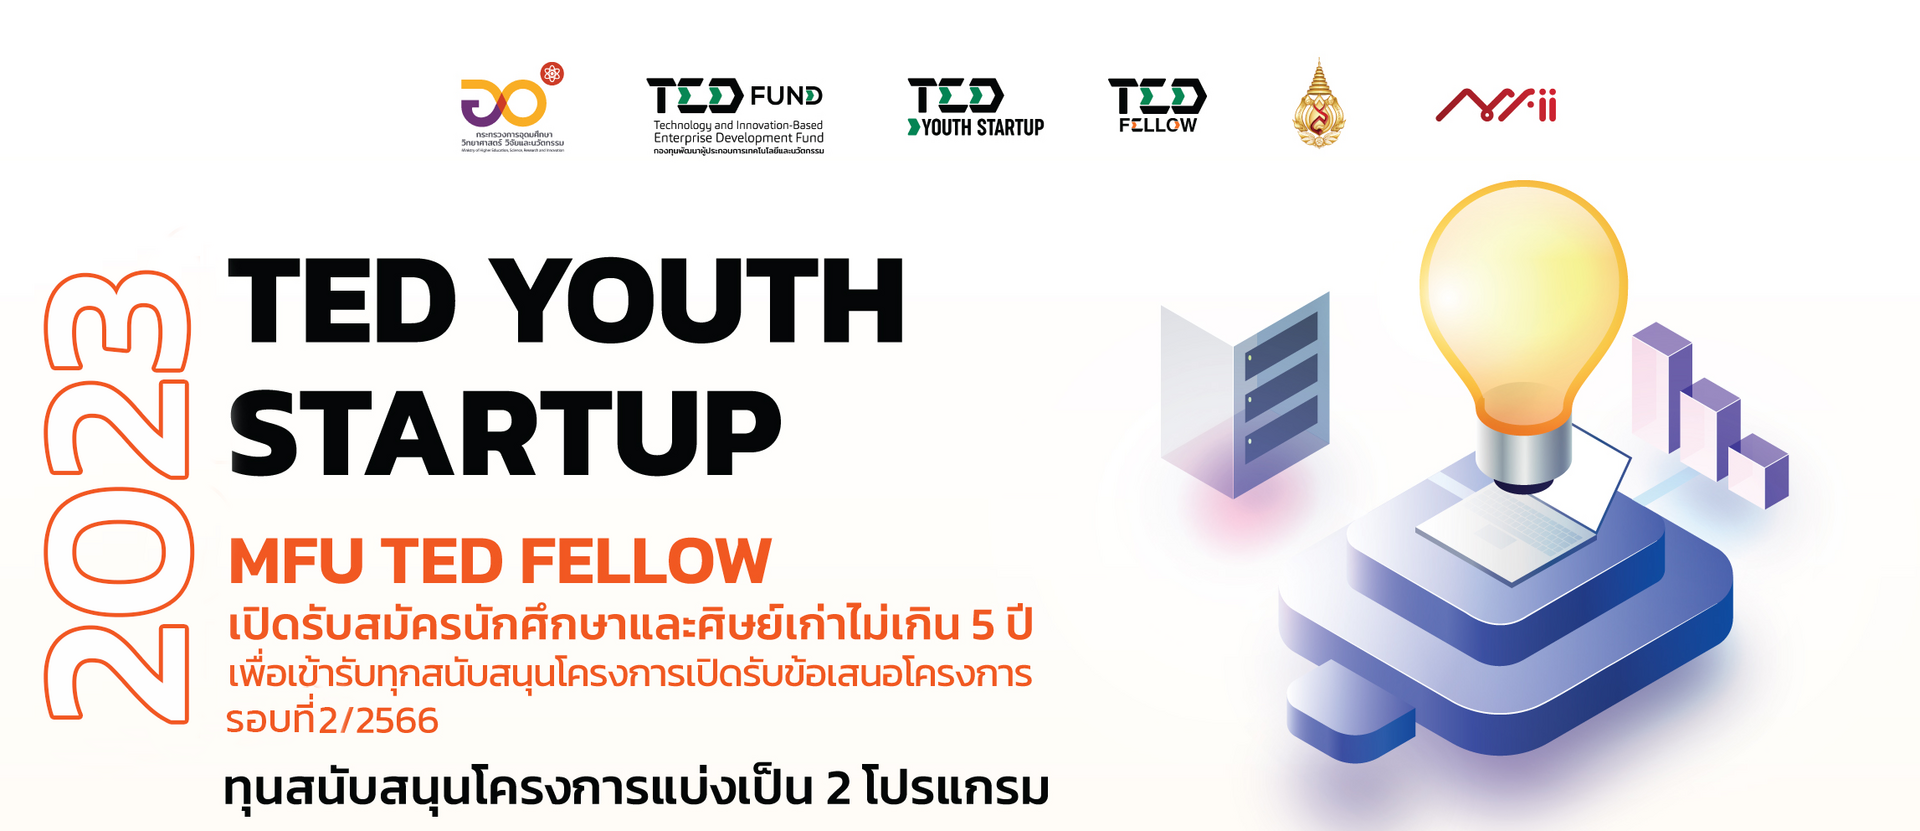 MFU TED Youth Startup 2023 เปิดรับสมัครนักศึกษาและศิษย์เก่าไม่เกิน 5 ปี เพื่อขอรับทุนสนับสนุนโครงการฯ 